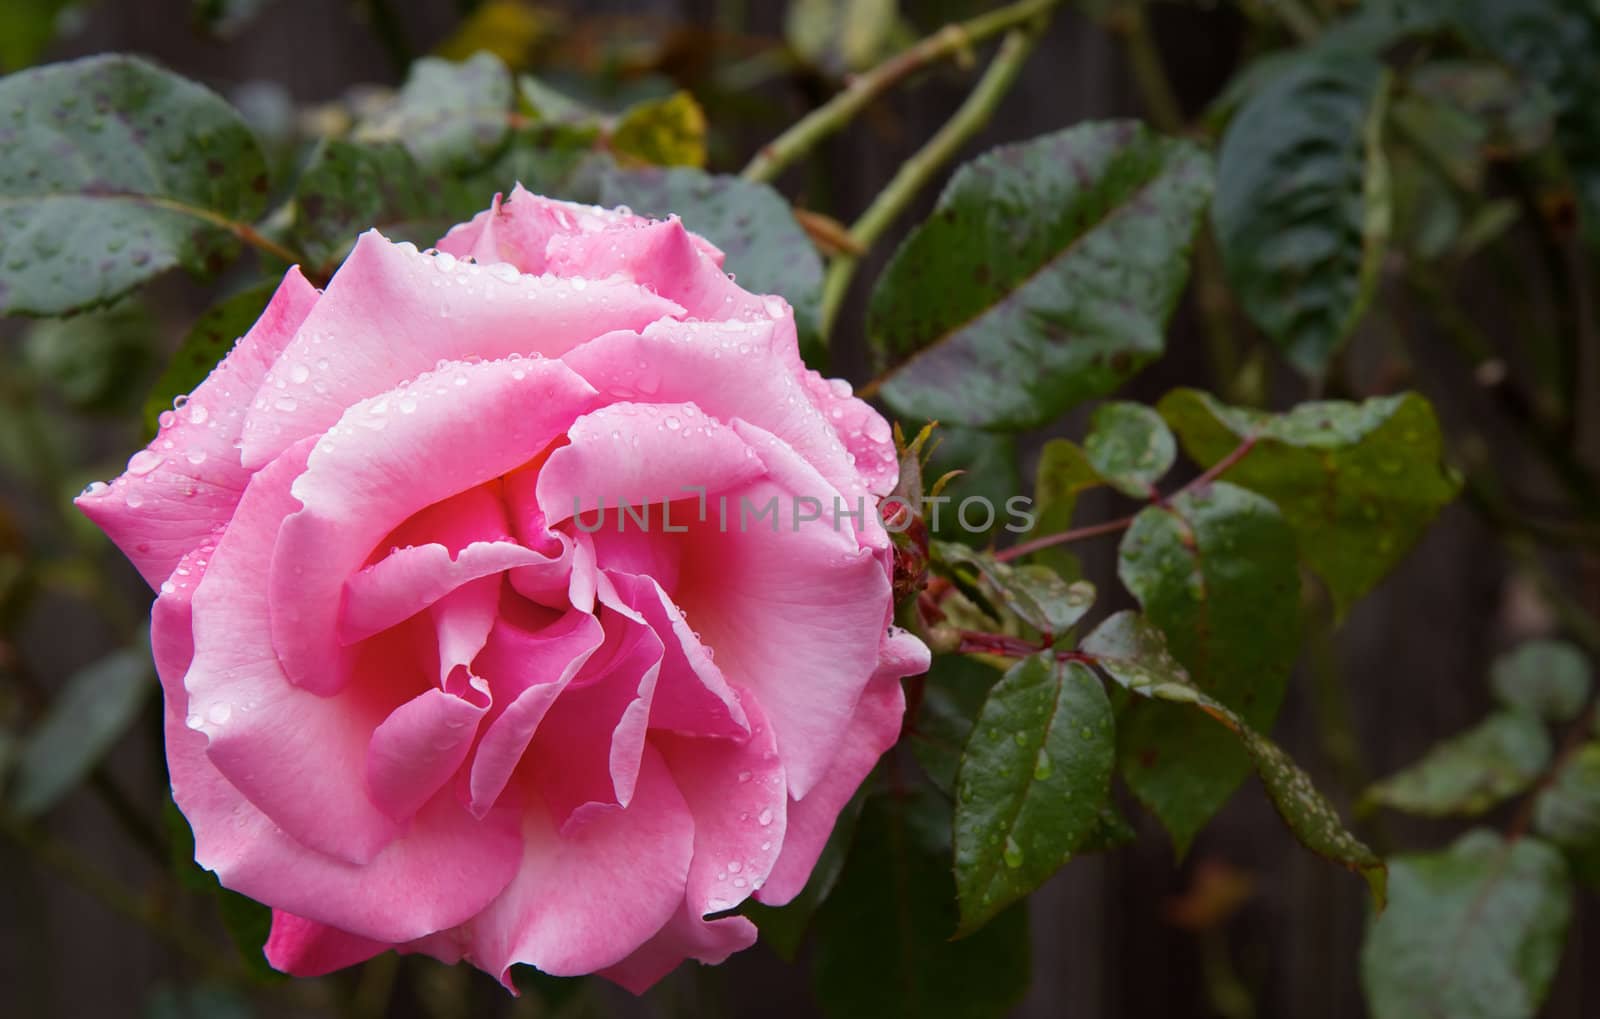 Wet Pink Rose by bobkeenan